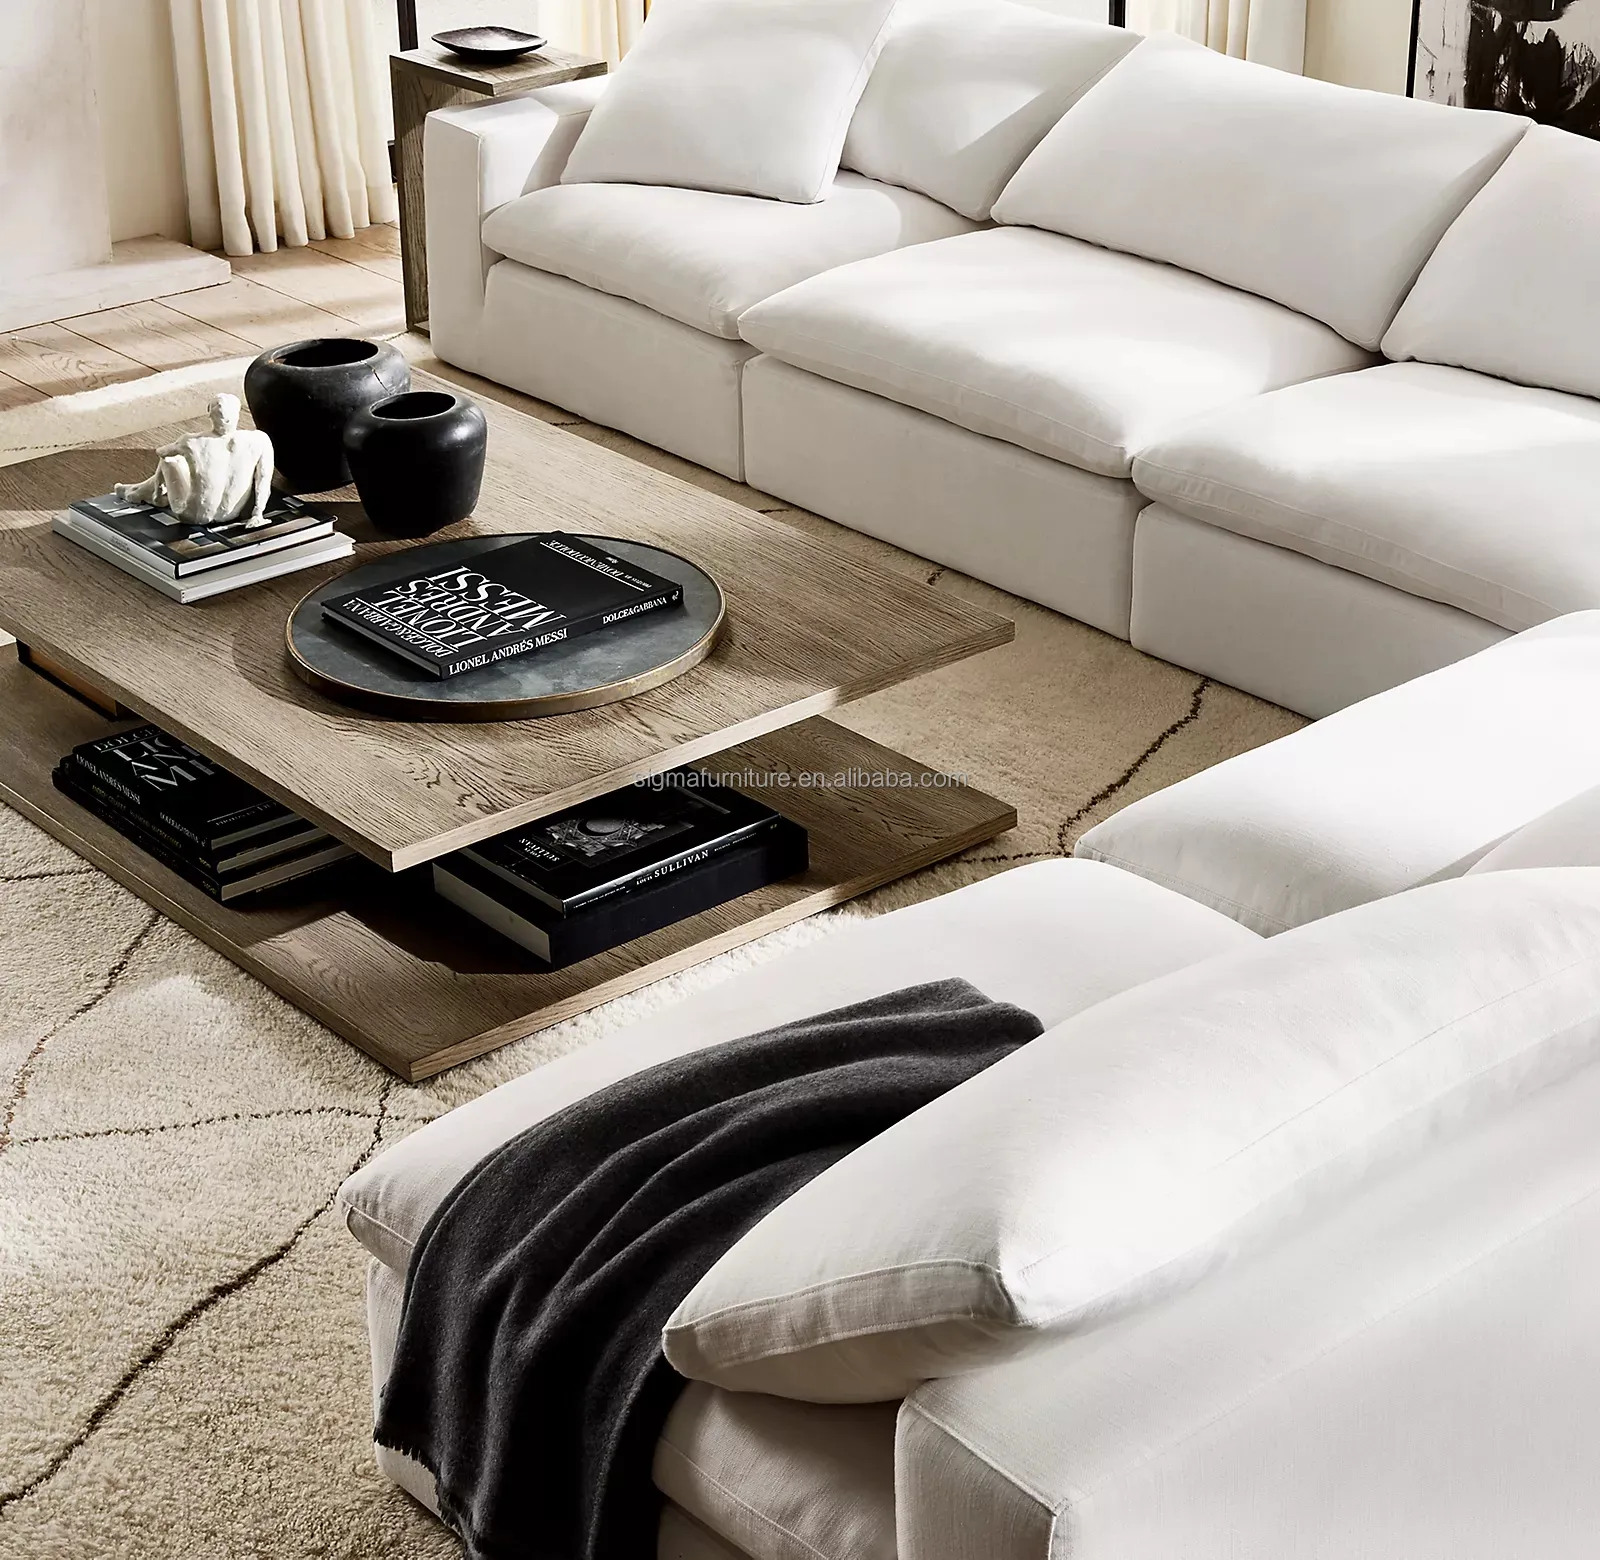 Sofá cama de estilo nórdico de diseño caliente, muebles modernos para sala de estar, conjunto de sofá en nube, sofá modular seccional en forma de L